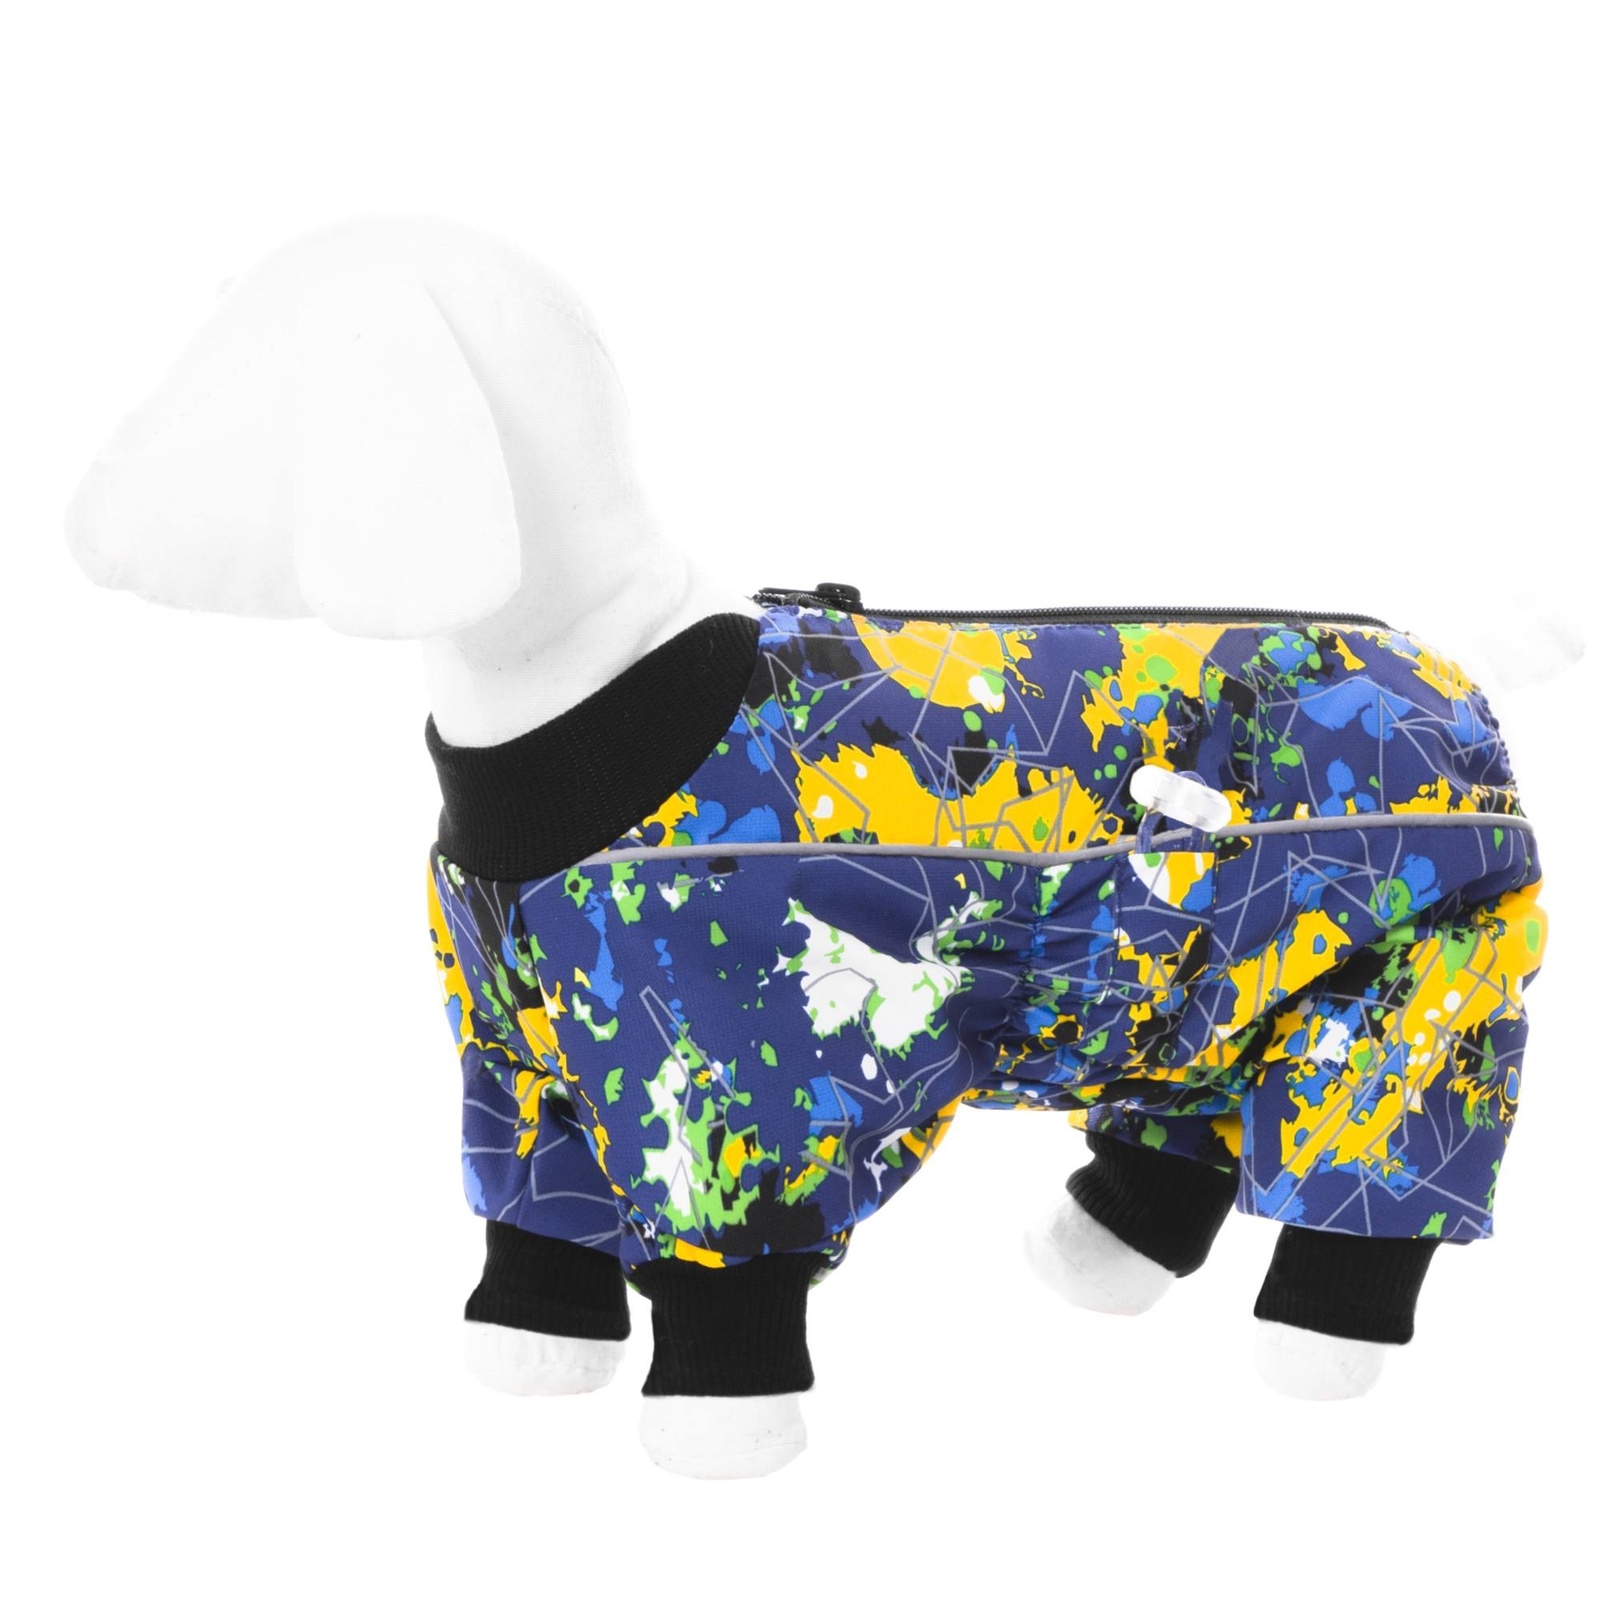 Yami-Yami одежда Yami-Yami одежда комбинезон для собак малых пород, на флисе с рисунком краски (XL) yami yami одежда yami yami одежда комбинезон для той терьера на флисе с рисунком краски s